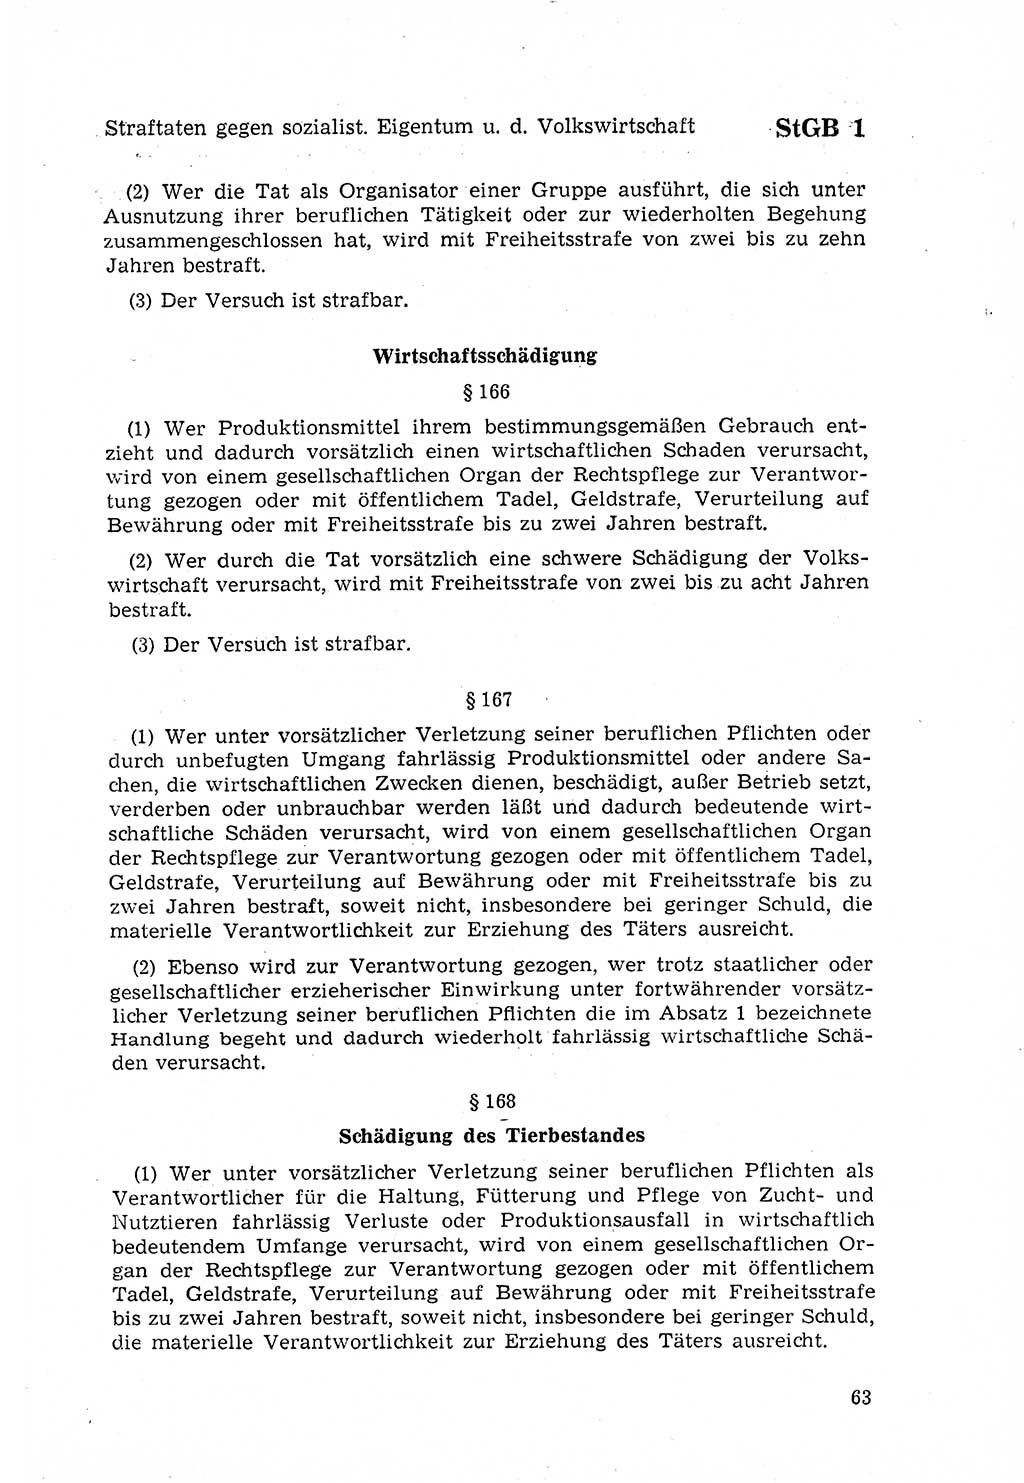 Strafgesetzbuch (StGB) der Deutschen Demokratischen Republik (DDR) 1968, Seite 63 (StGB DDR 1968, S. 63)